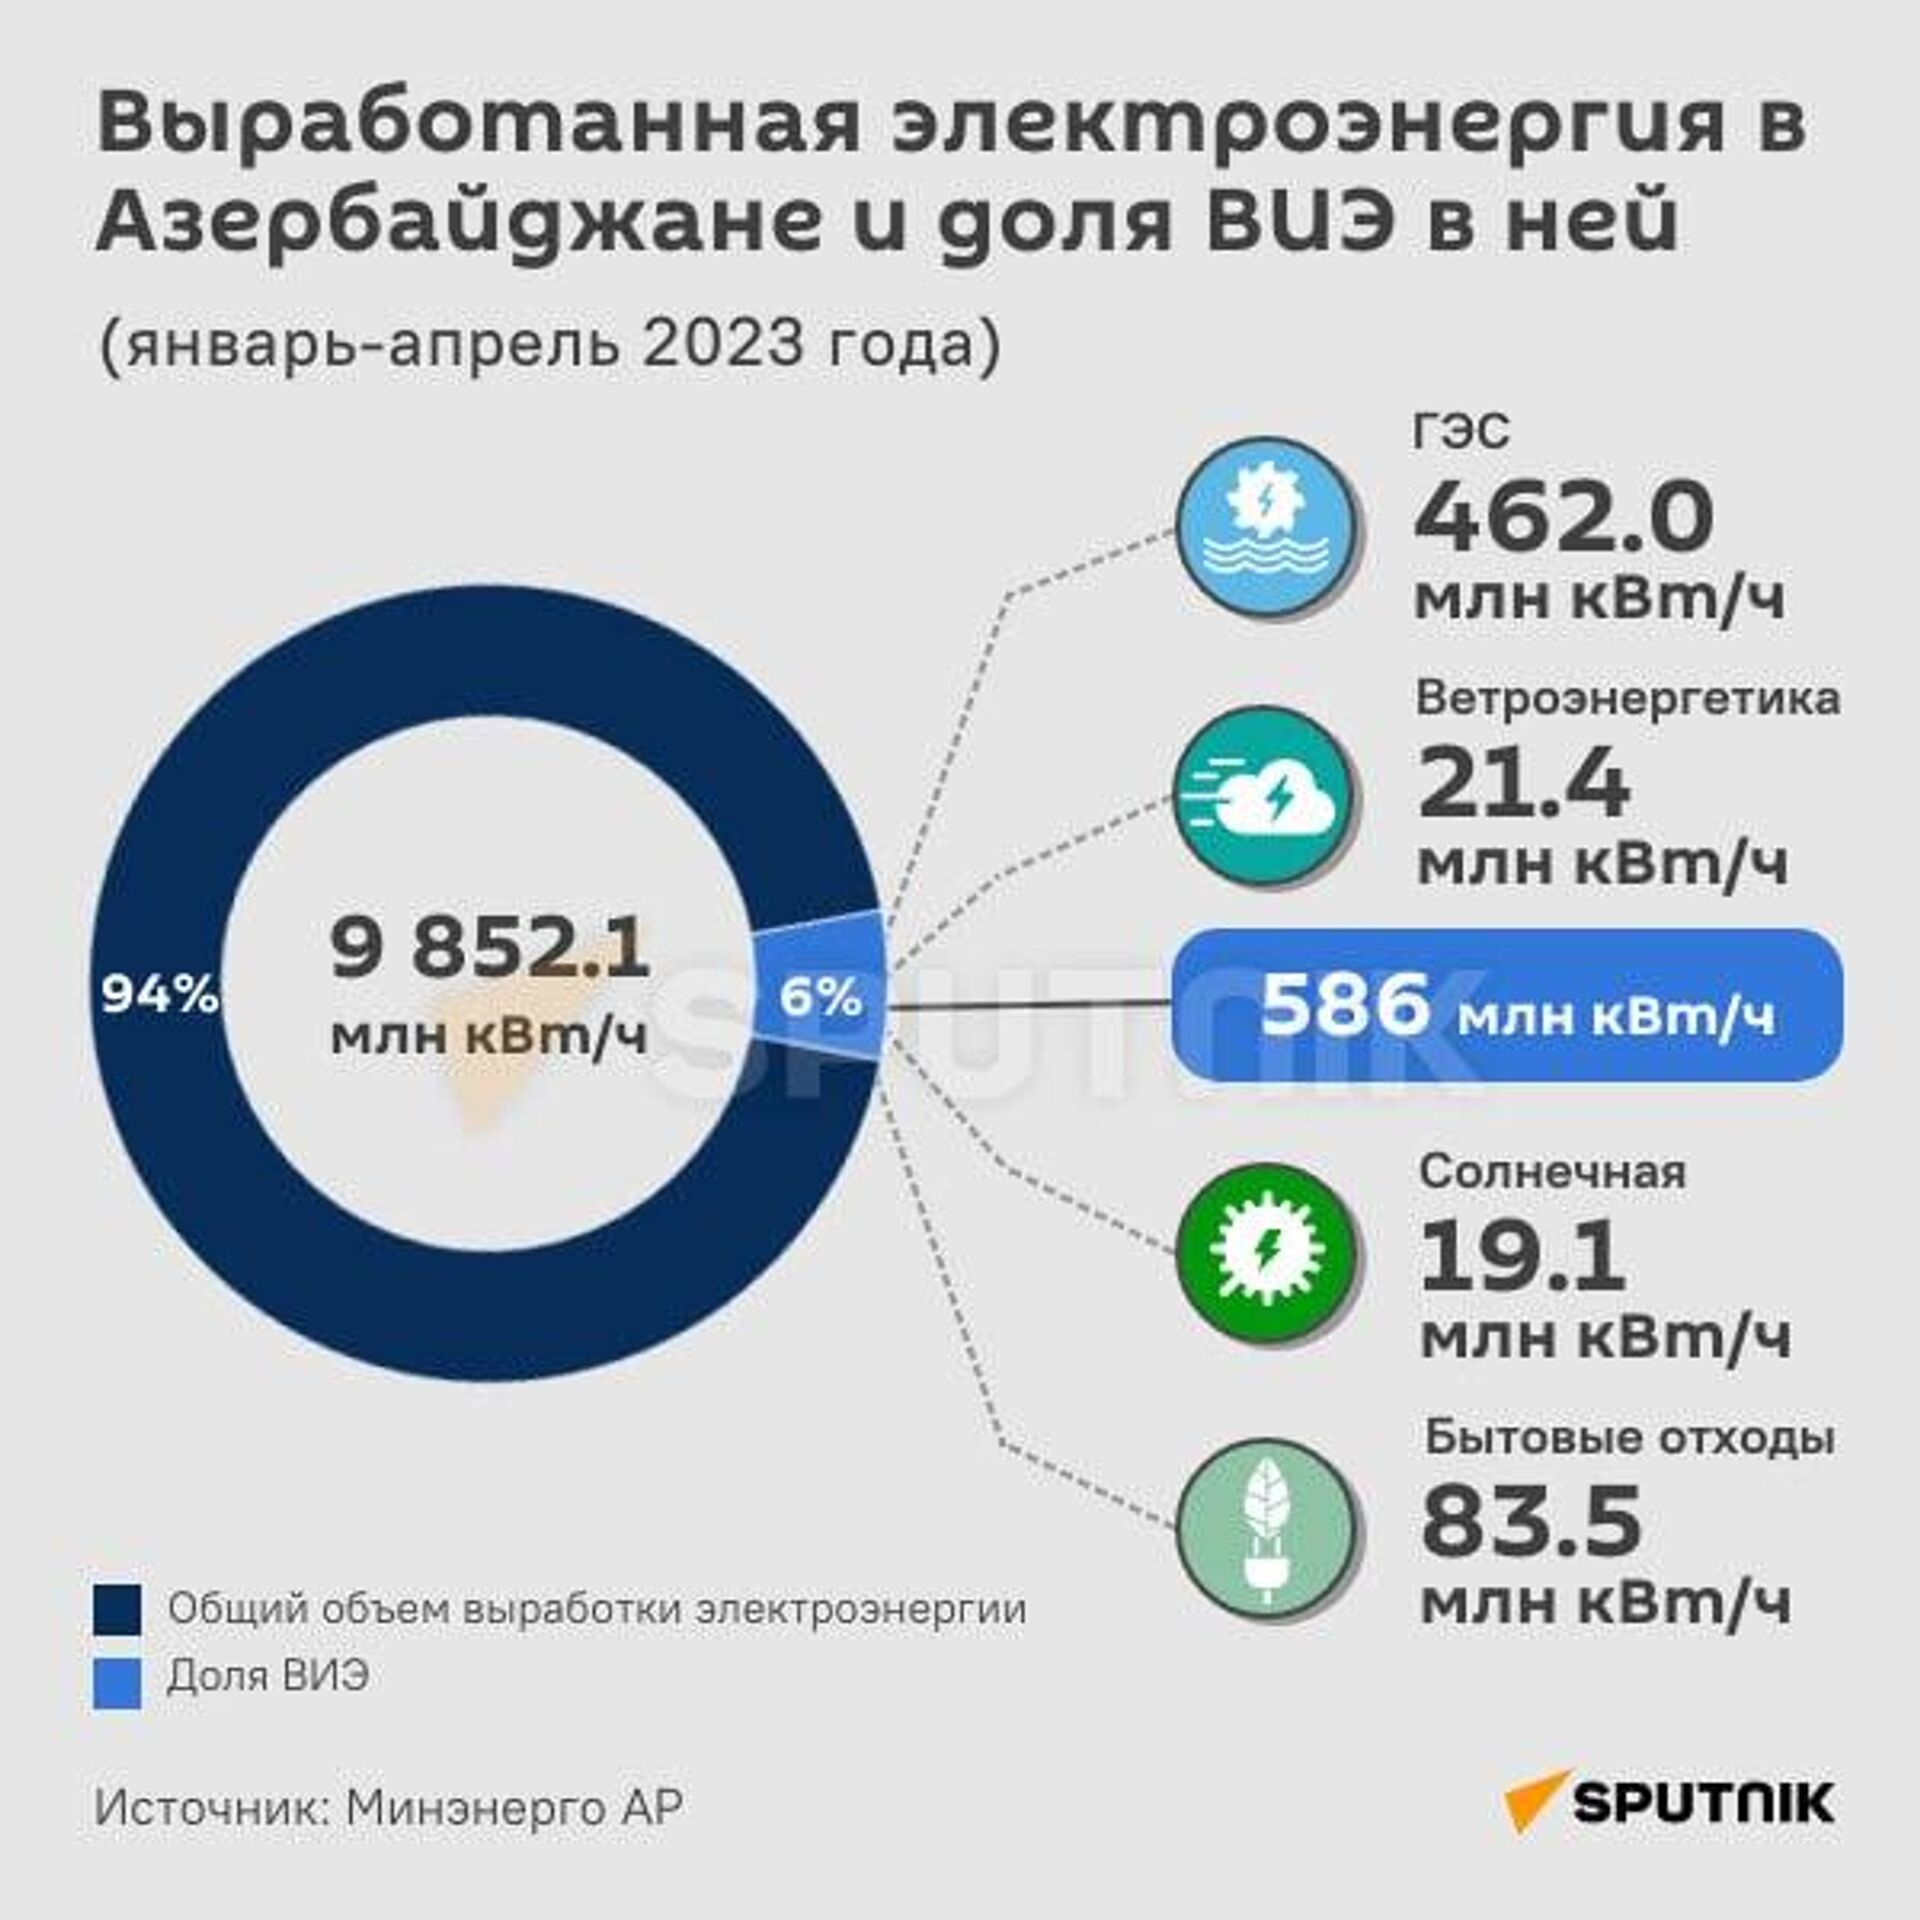 Инфографика: Выработанная электроэнергия в Азербайджане и доля ВИЭ в ней - Sputnik Азербайджан, 1920, 15.05.2023